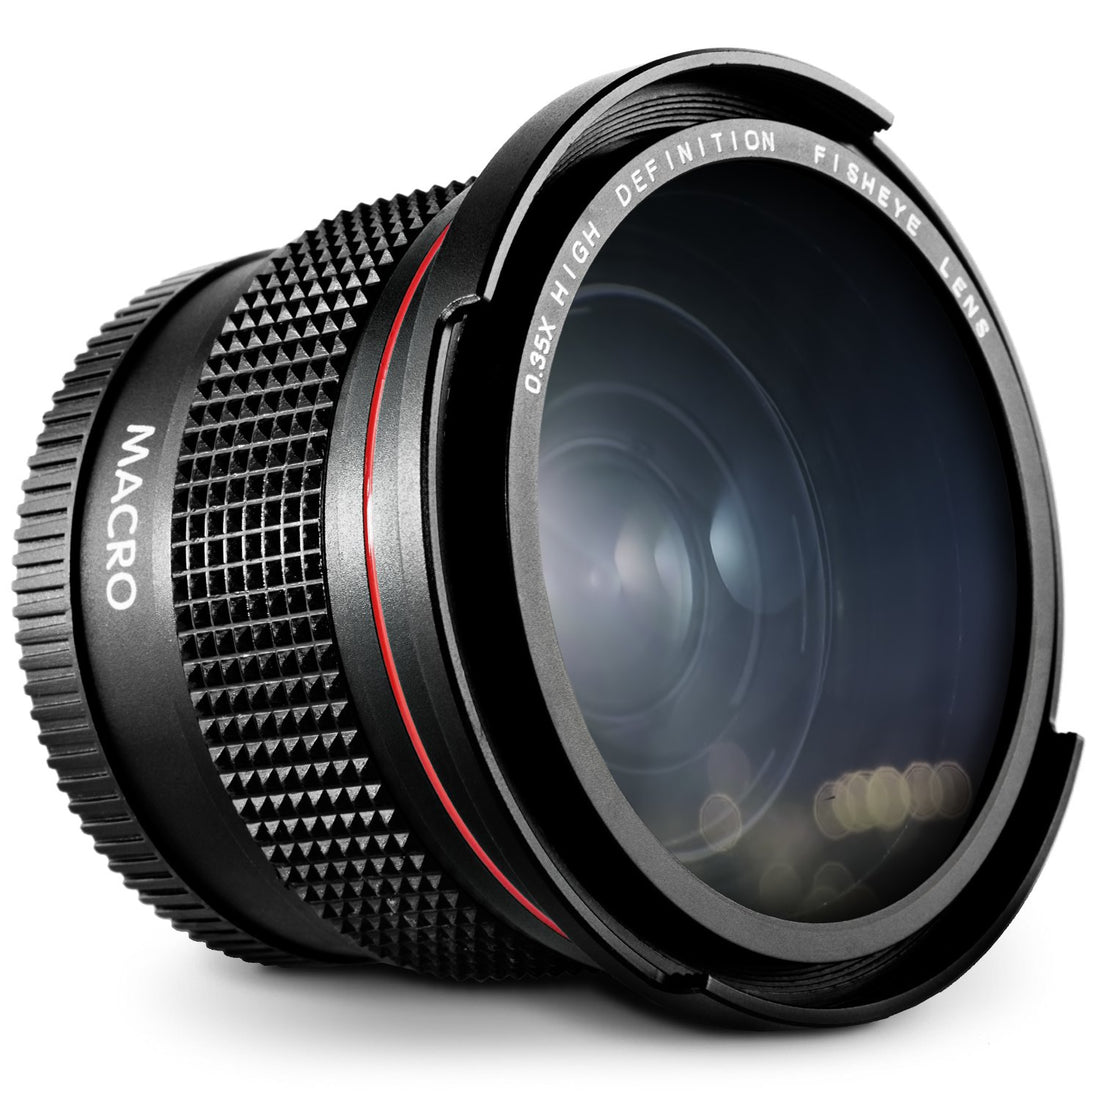 52MM 0.35X Altura Photo Professional Super Fisheye Wide Angle Lens w/ Macro Close Up for Nikon D5300 D5200 D5100 D3300 D3200 D3100 D3000 DSLR Cameras